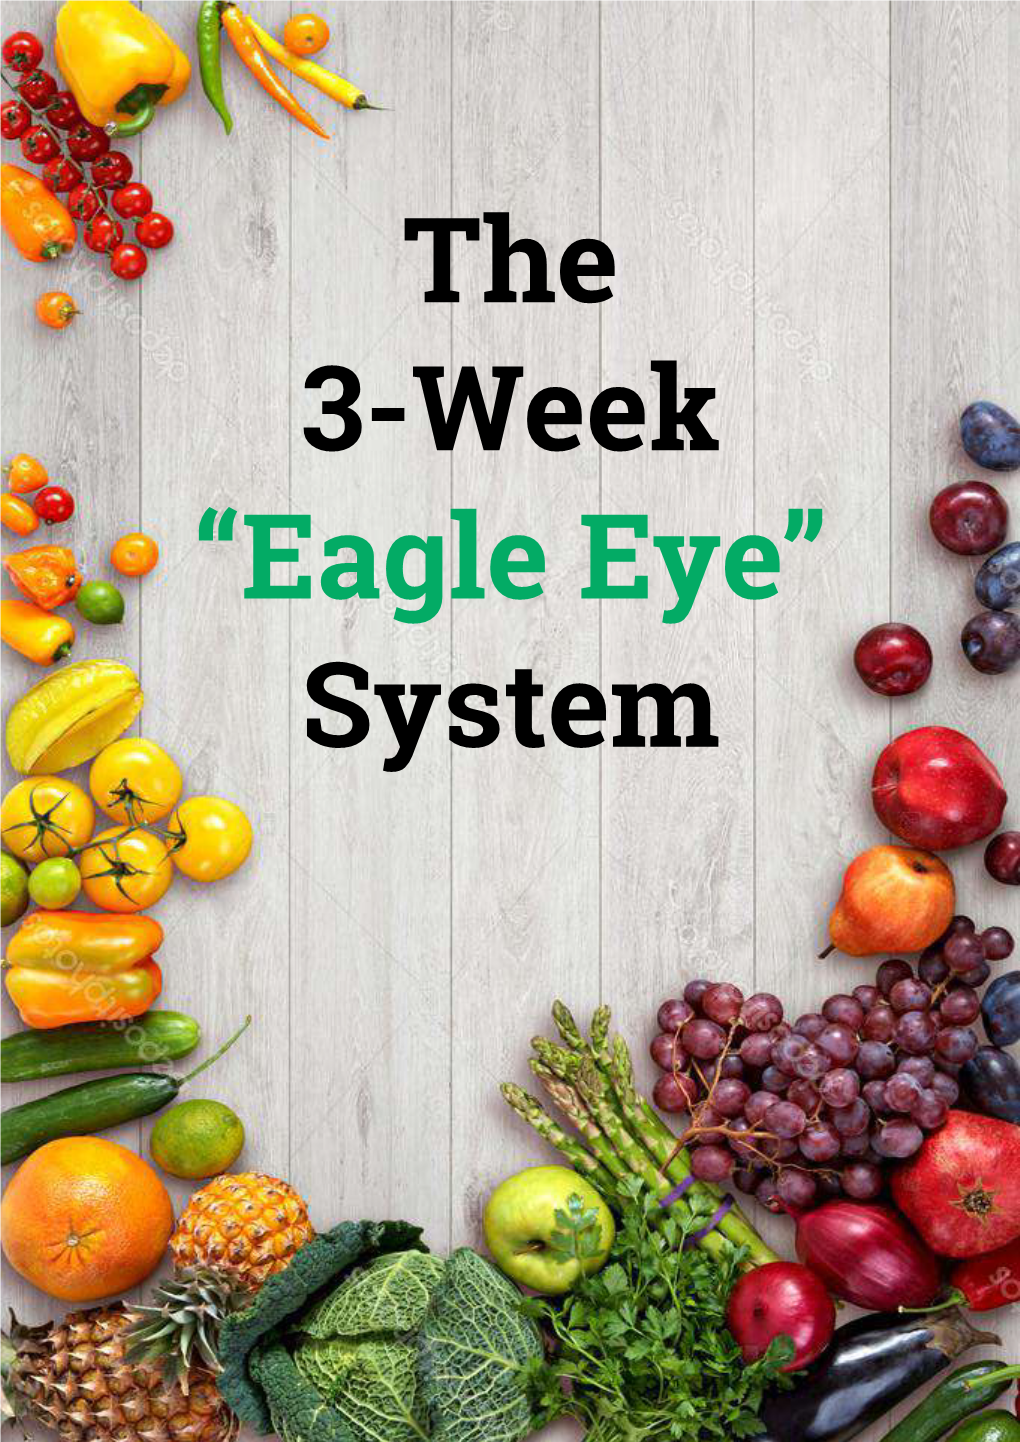 Eagle Eye” System the 3-Week “Eagle Eye” System the 3-Week “Eagle Eye” System the 3-Week “Eagle Eye” System the 3-Week “Eagle Eye” System